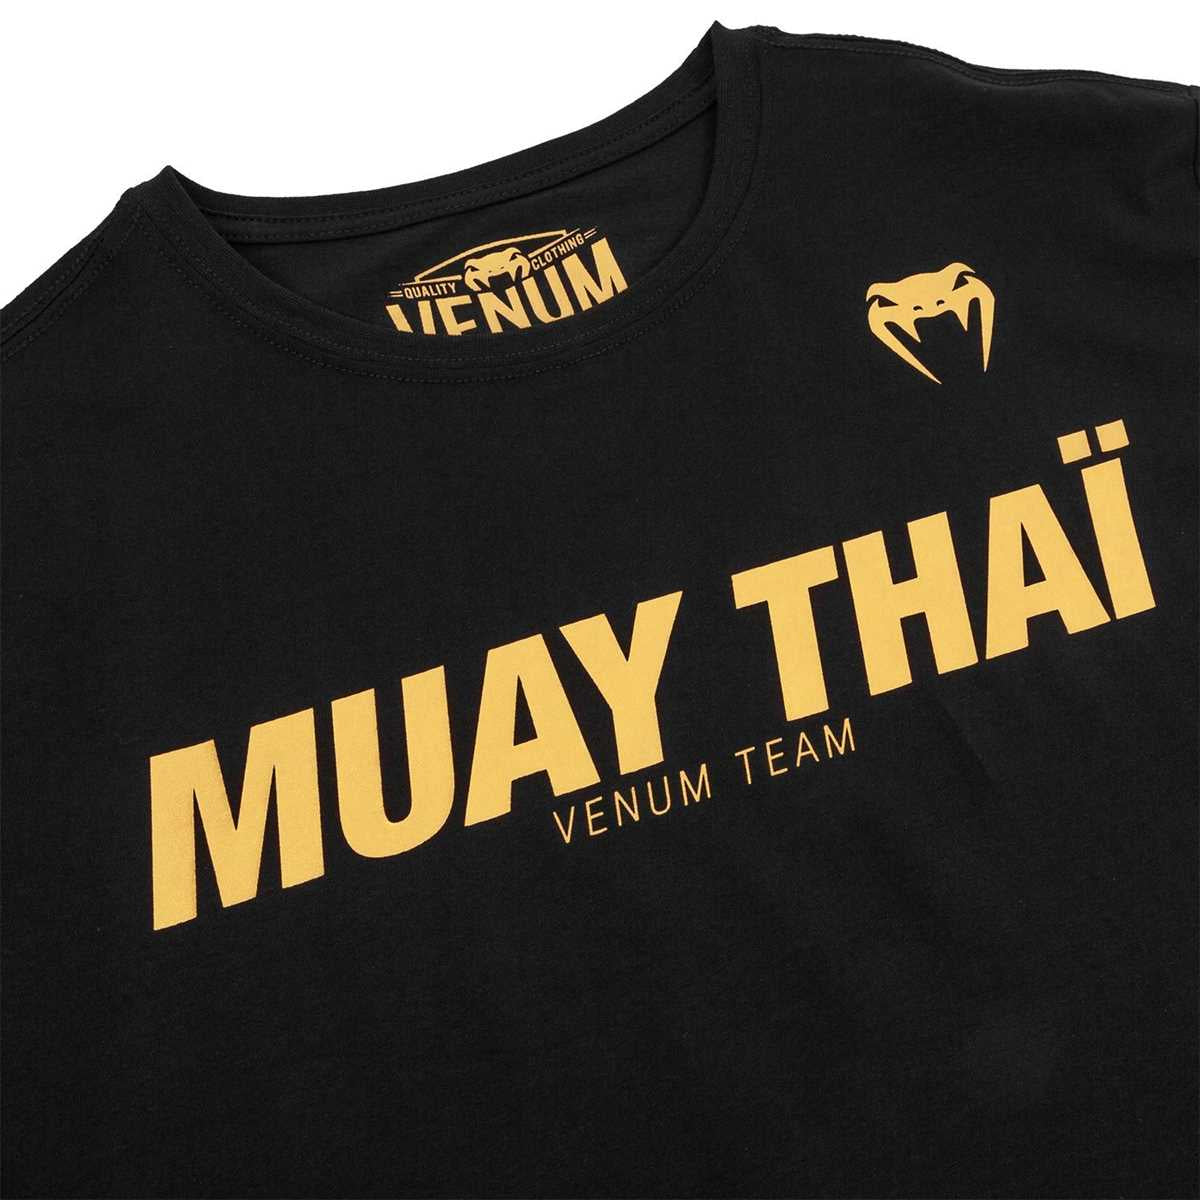 T-shirt Venum Muay Thai VT Nero-Oro